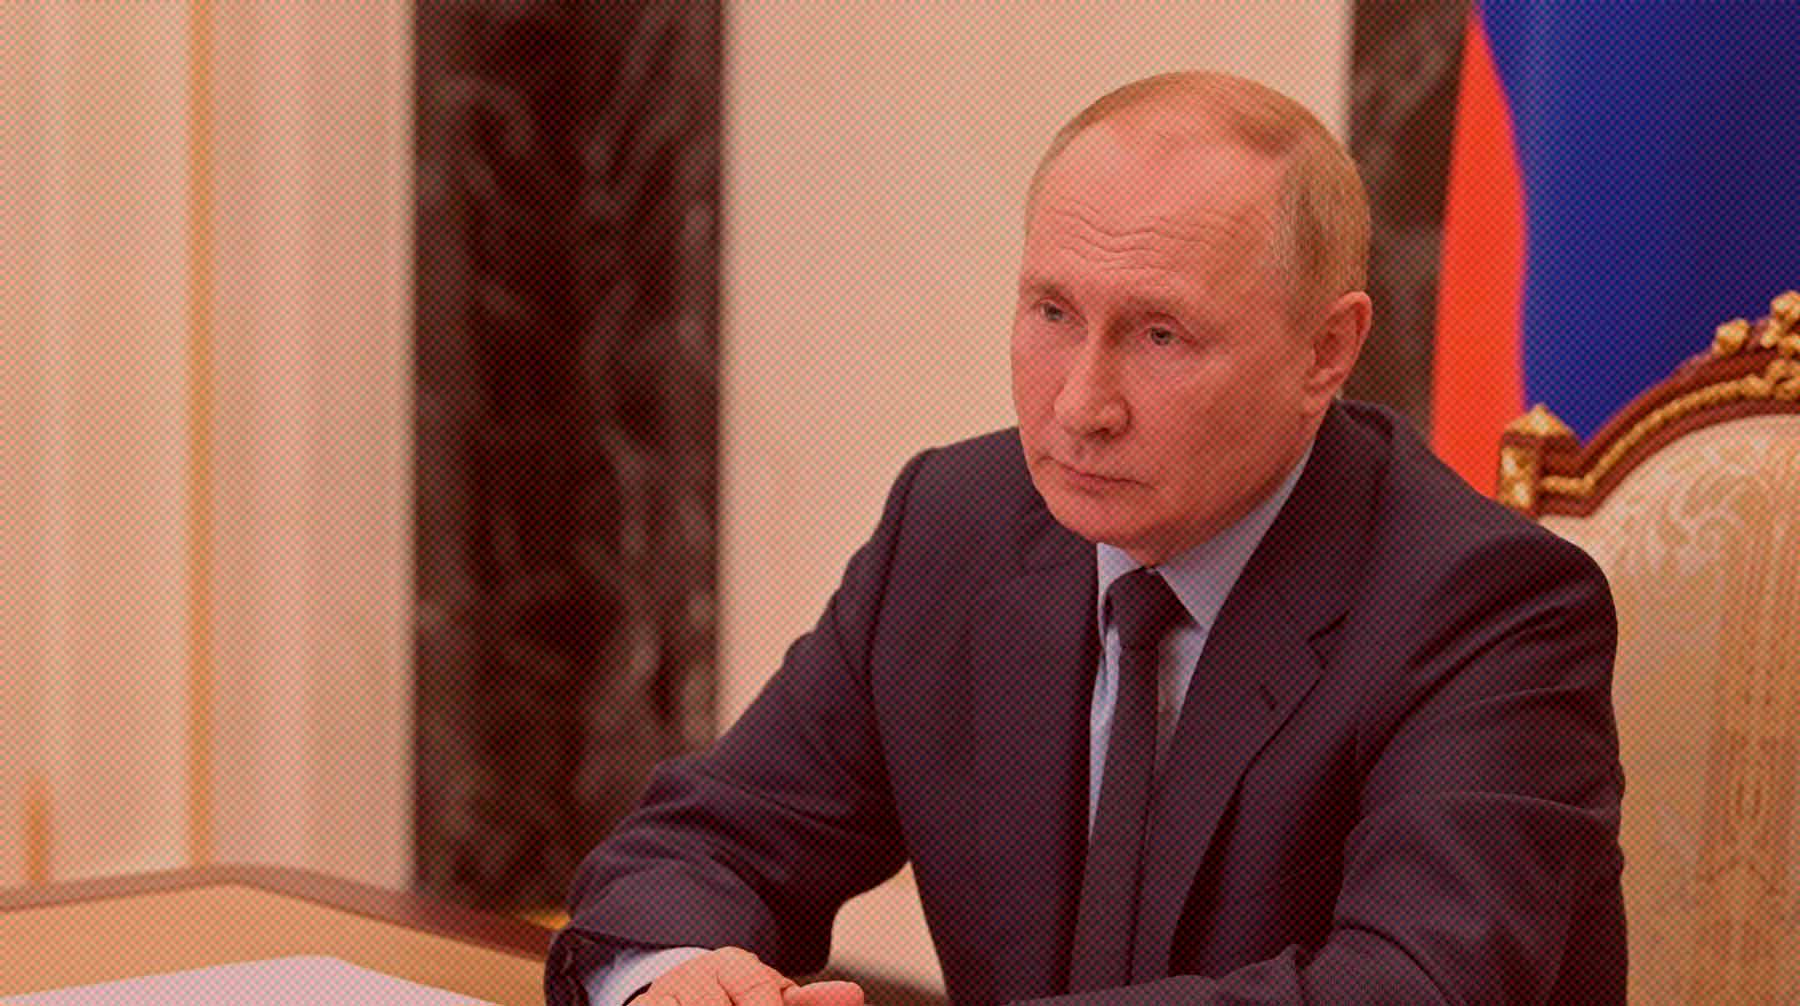 Глава государства объехал несколько районов города и побывал в гостях у семьи местных жителей, сообщили в Кремле Президент России Владимир Путин